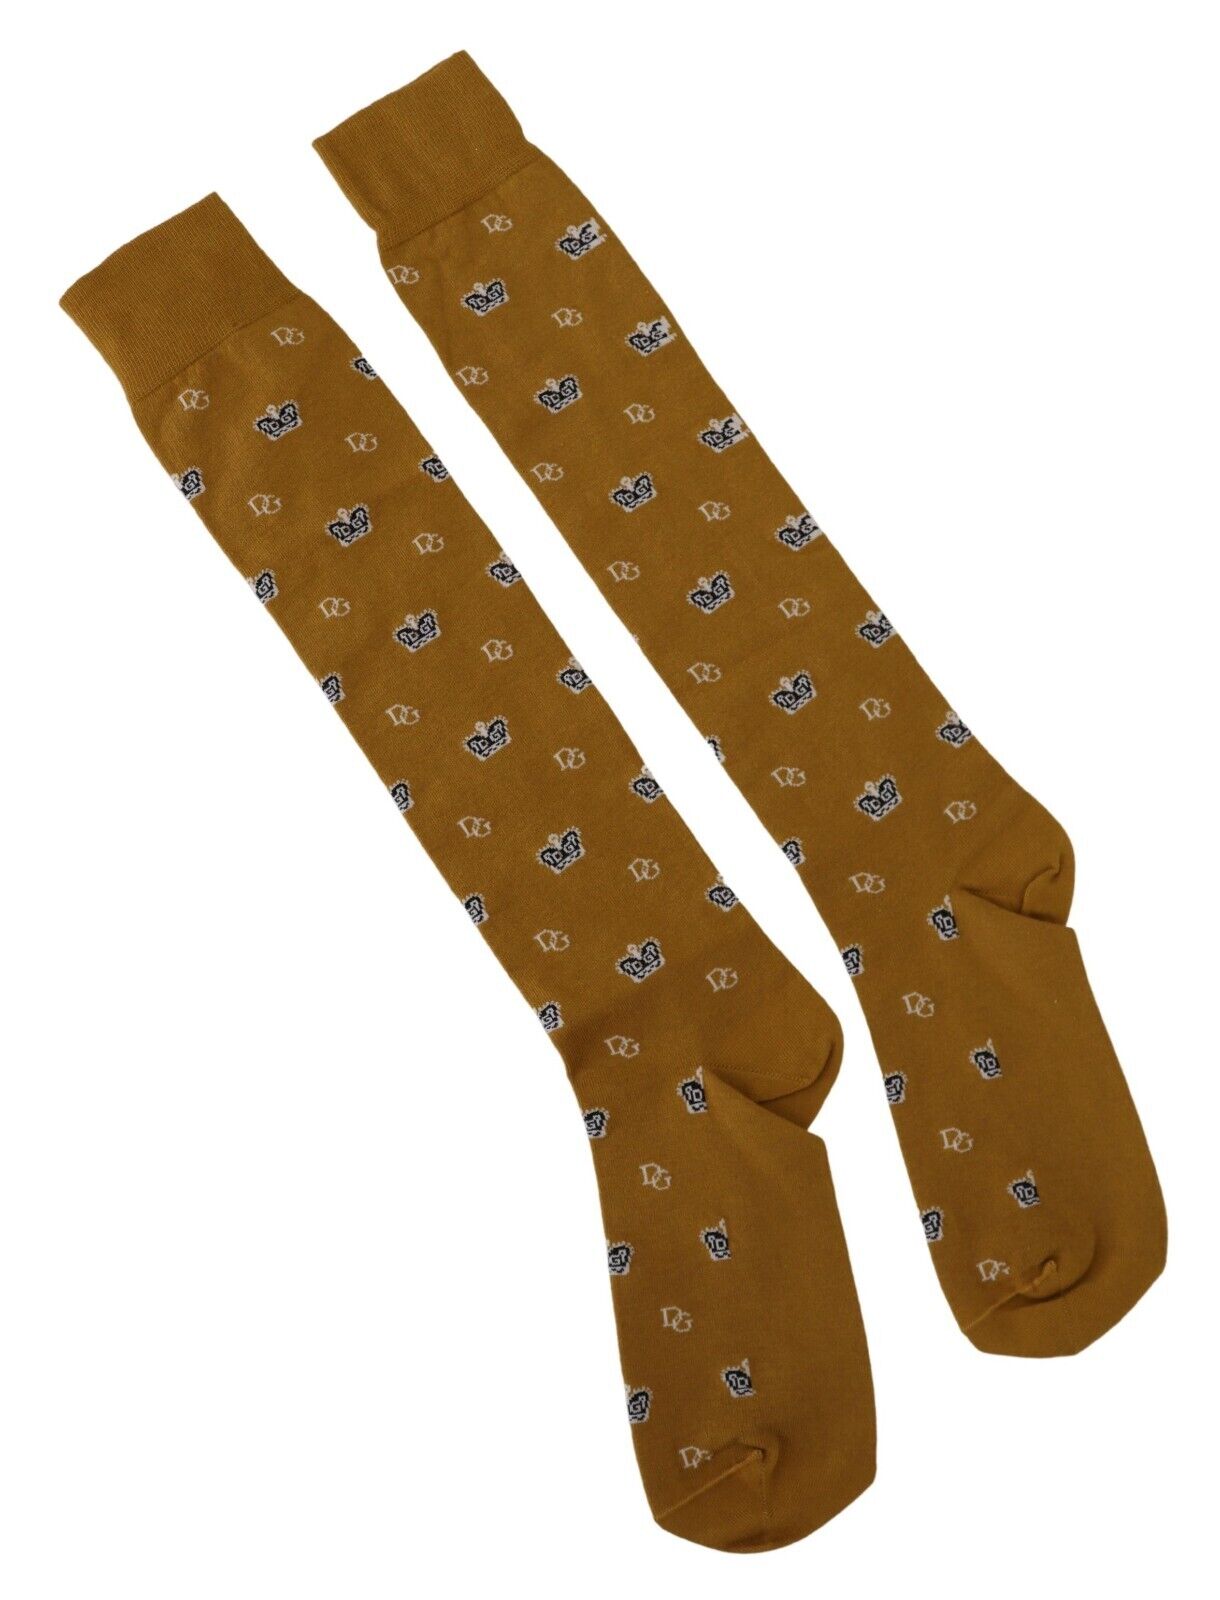 Носки DOLCE & GABBANA Мужские желтые хлопковые эластичные носки с принтом логотипа DG Crown s. л 110 долларов США